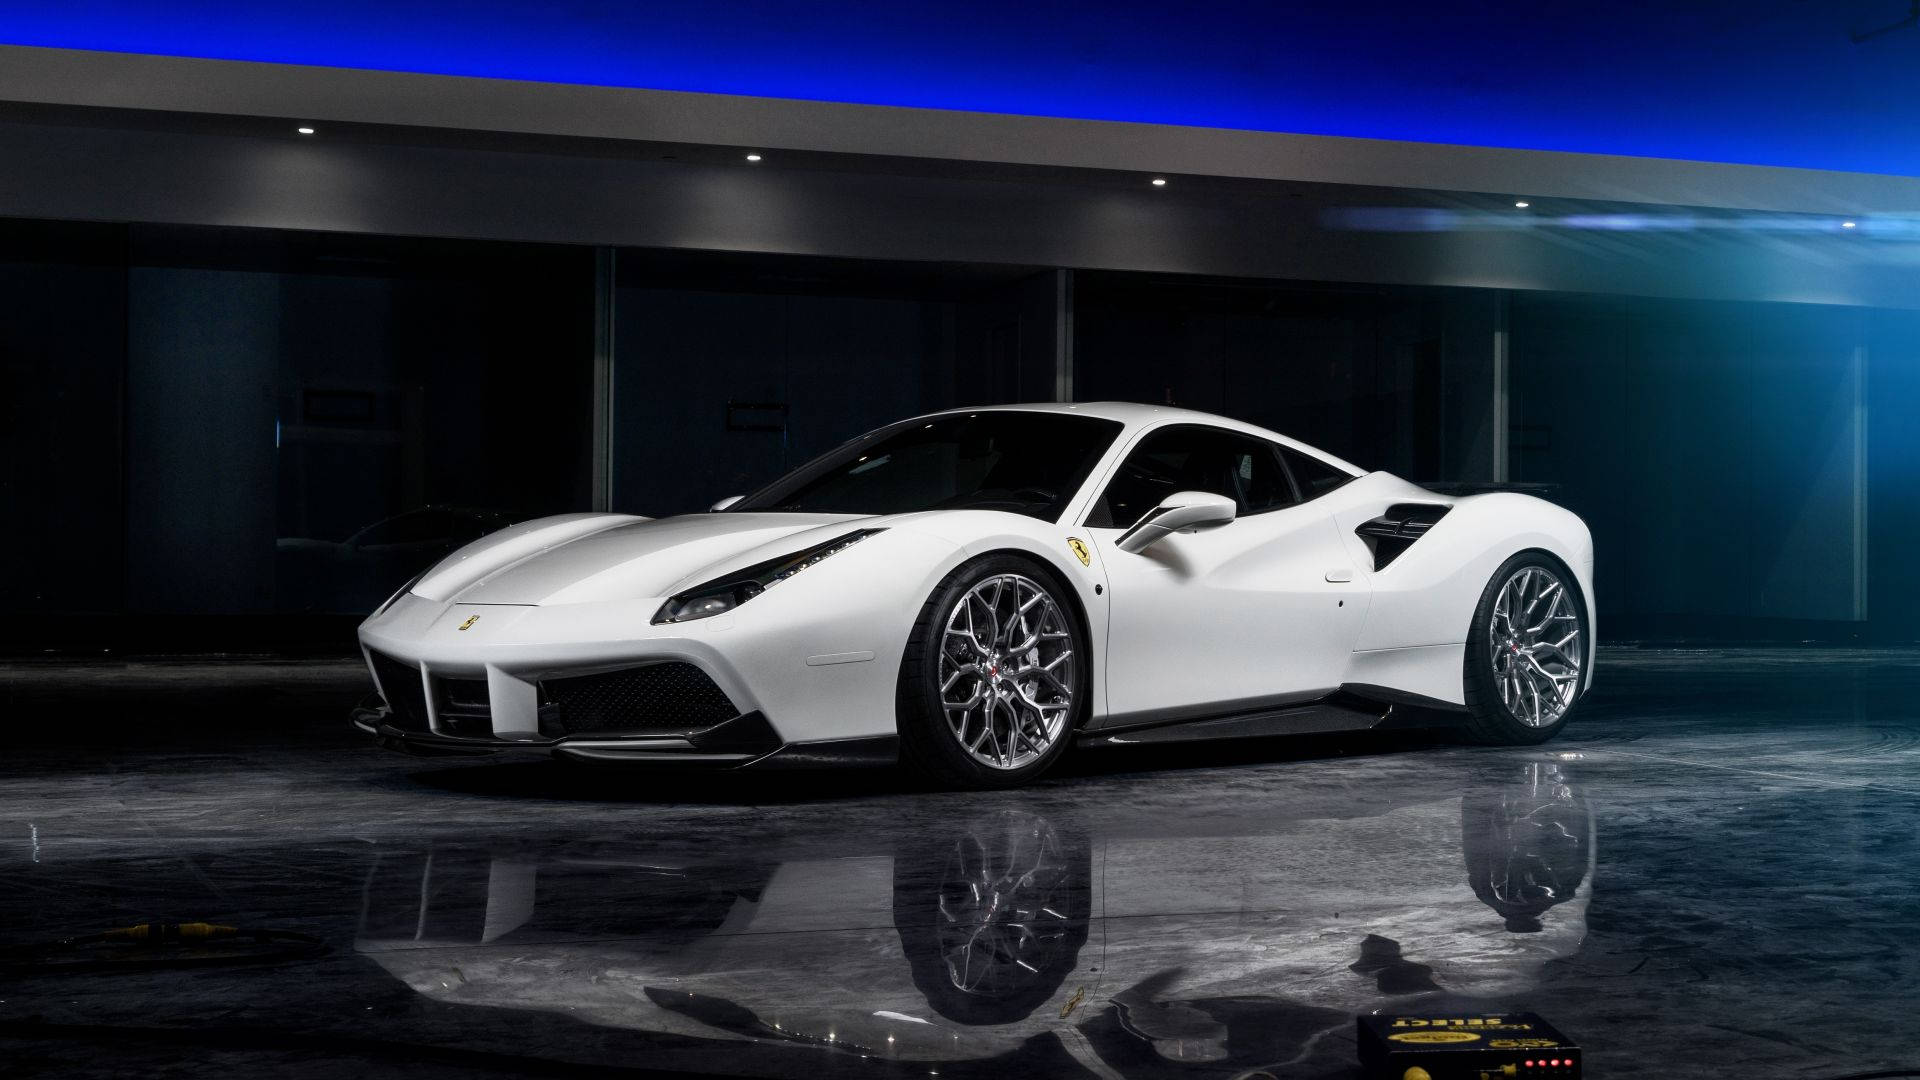 White Ferrari Reflection Background